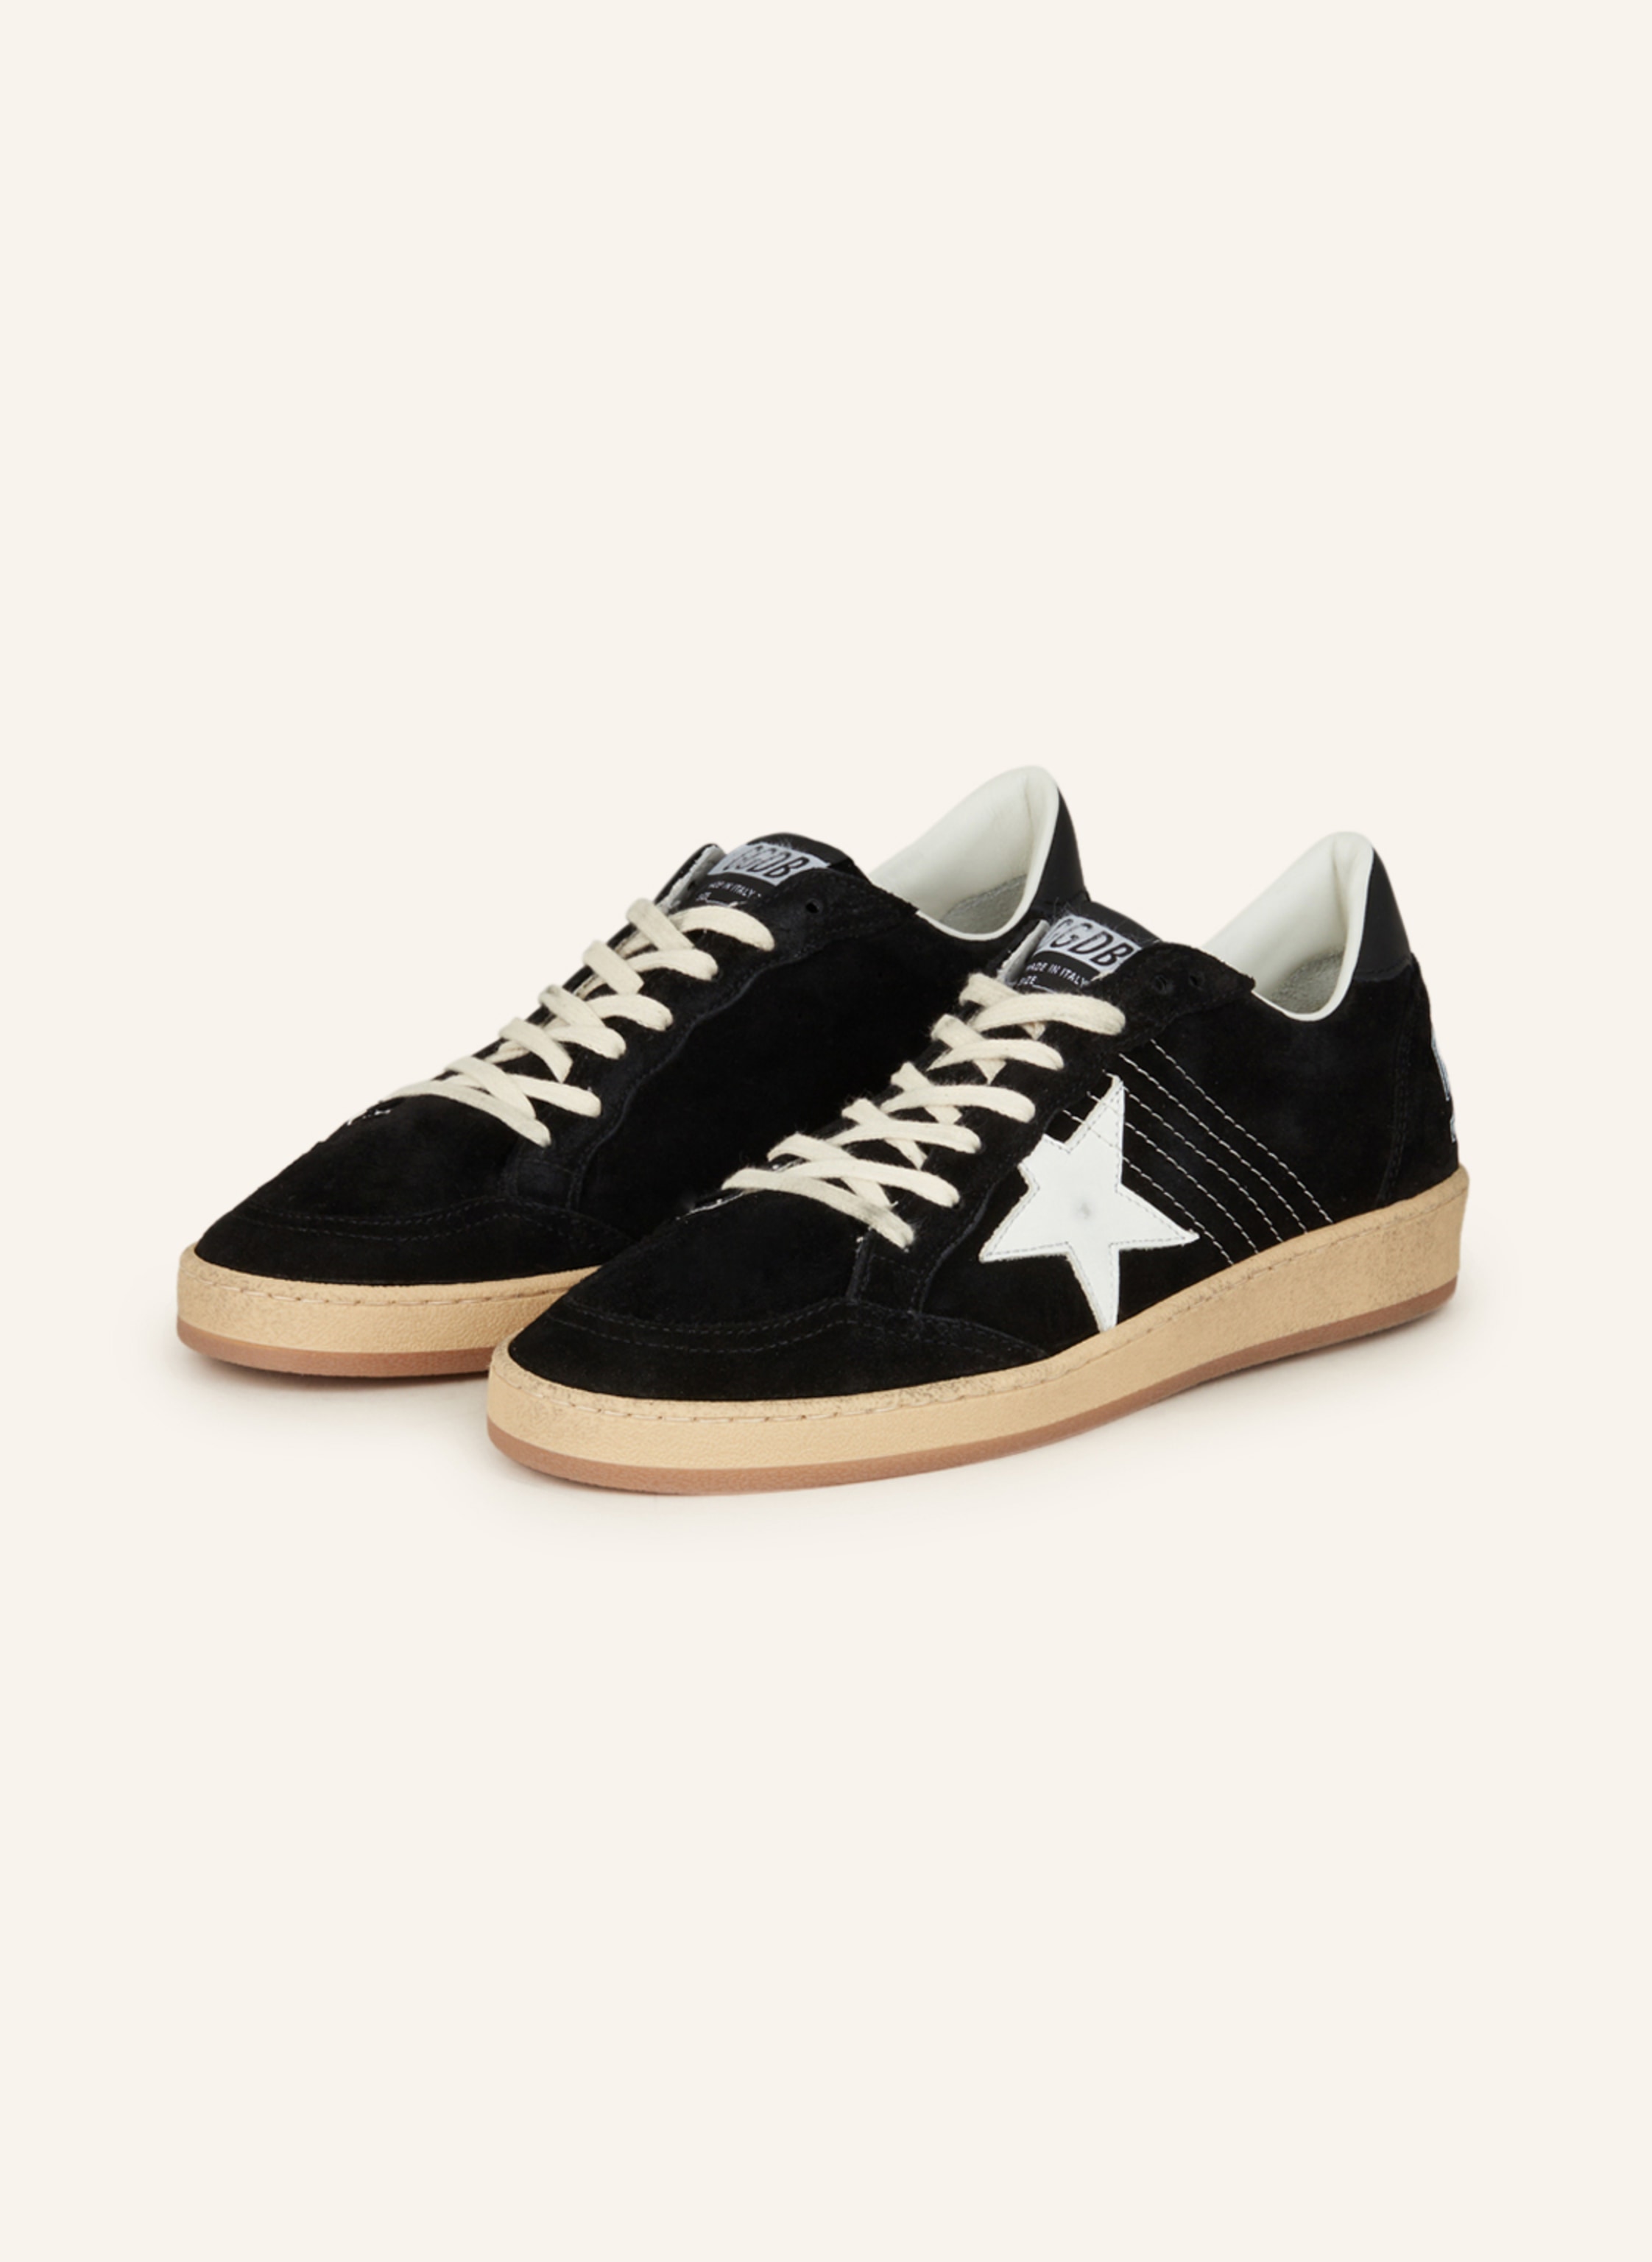 GOLDEN GOOSE Sneakers BALLSTAR SUEDE in black/ cream | Breuninger